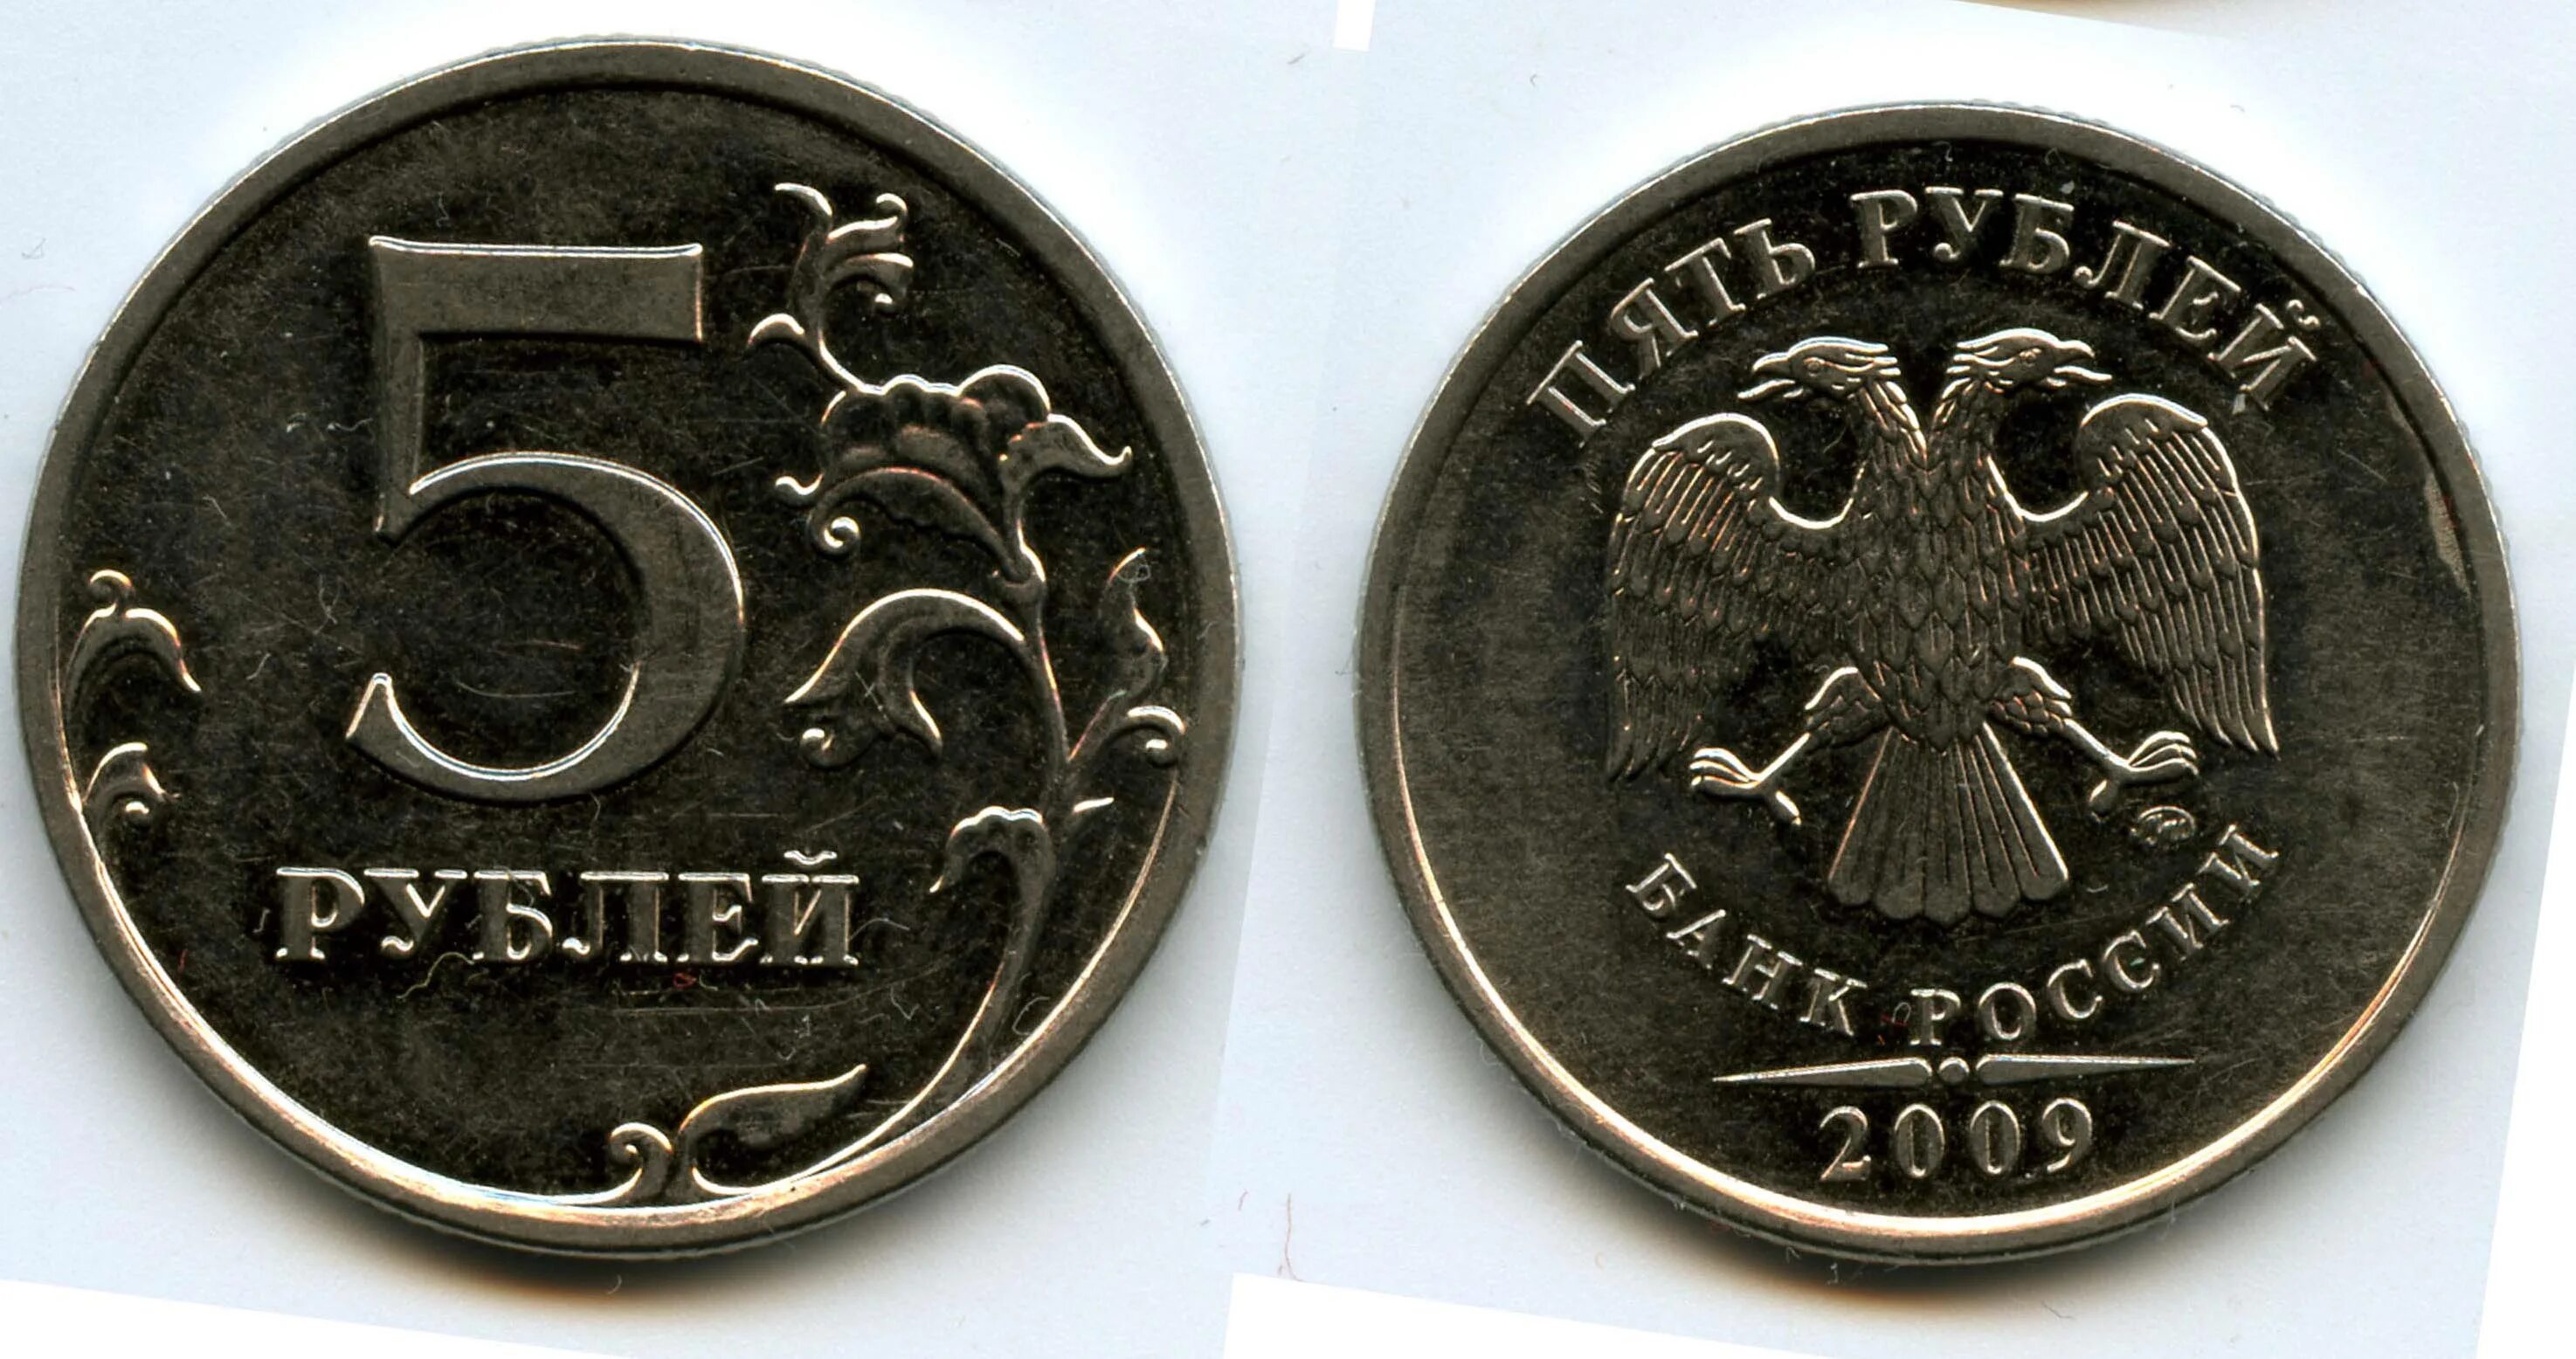 1999 год 5 рублей монеты. 5 Рублей 2009 ММД. 5 Рублей Московский монетный двор. 5 Рублей 2009 года ММД. 5 Рублей 2009 СПМД немагнитная.